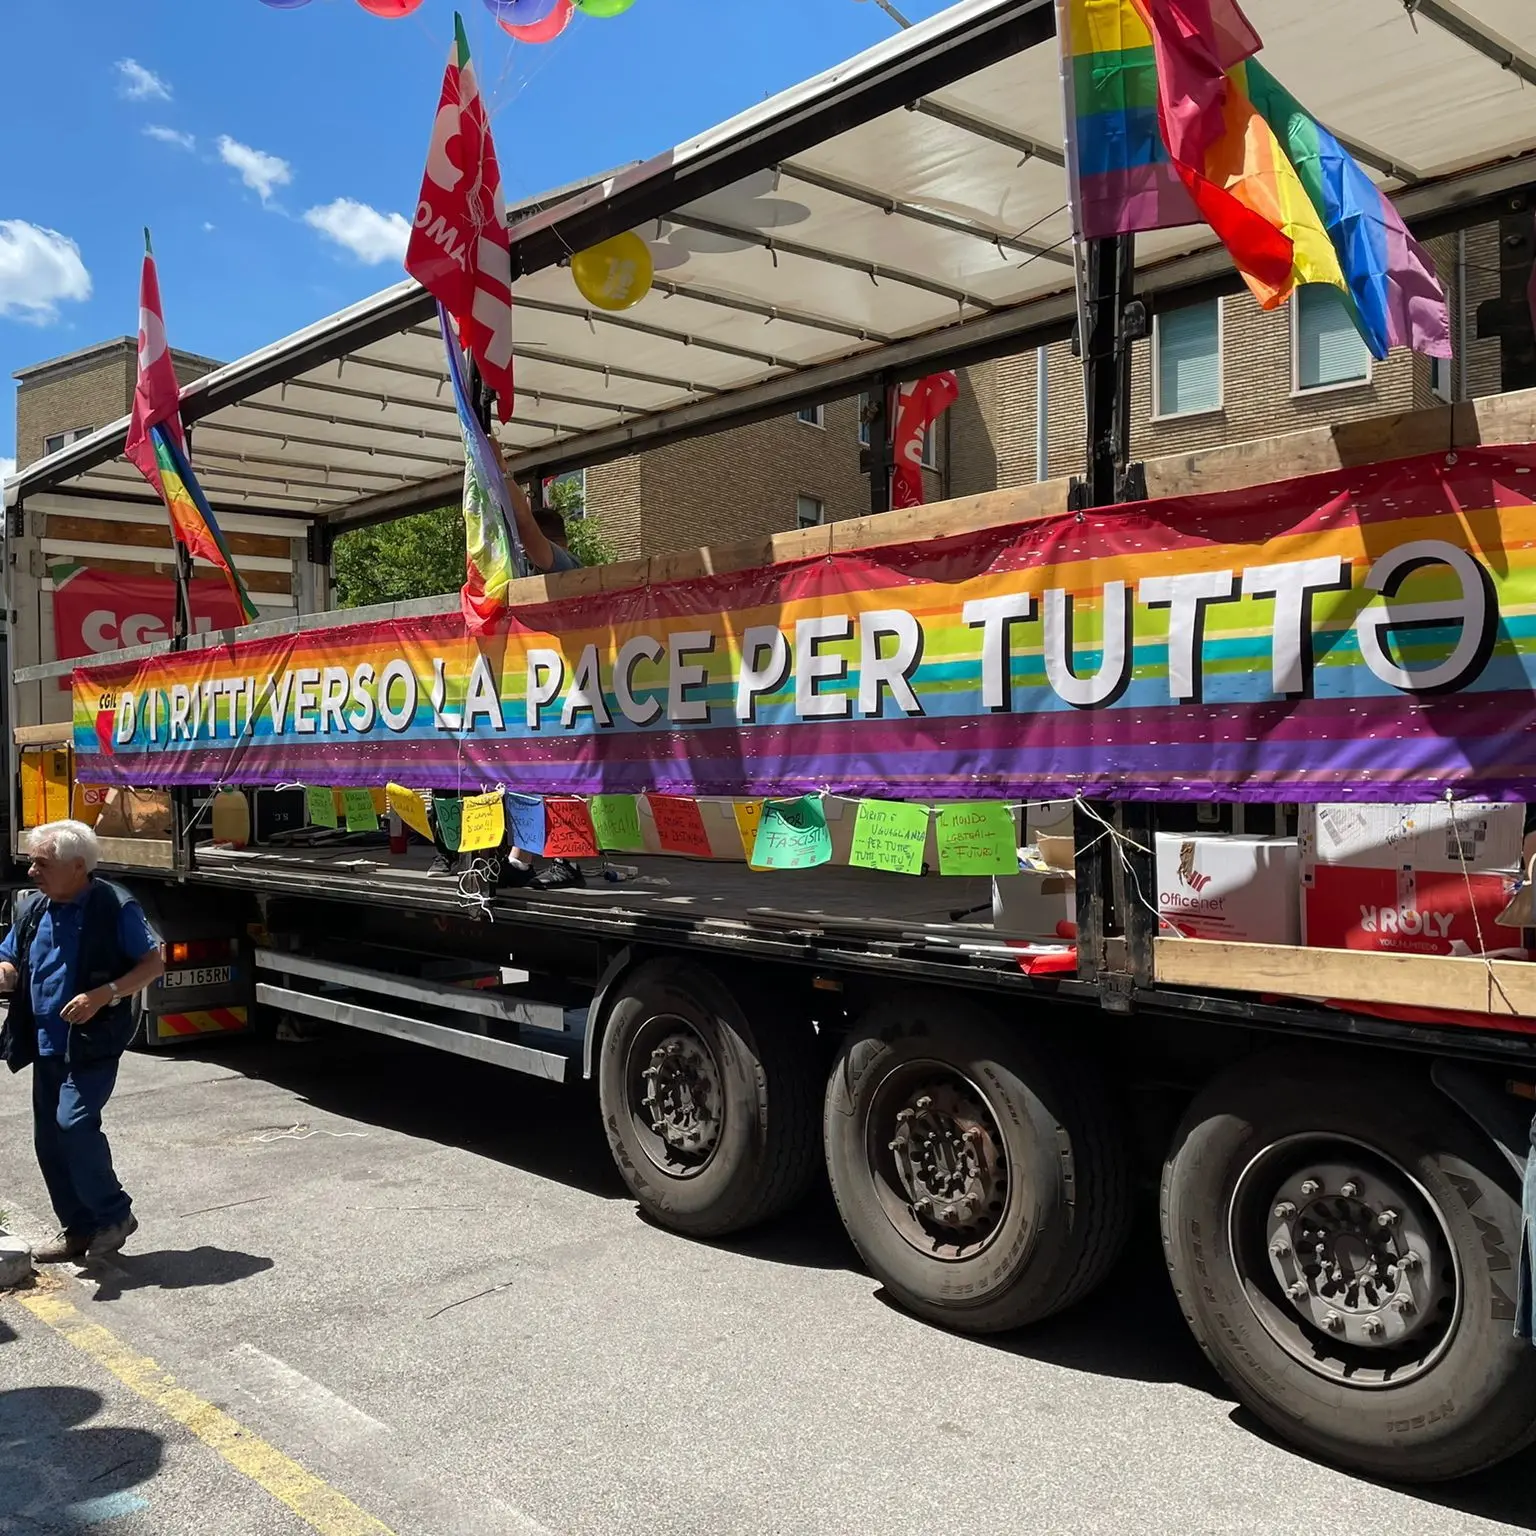 Roma Pride, in piazza per i diritti di tutti